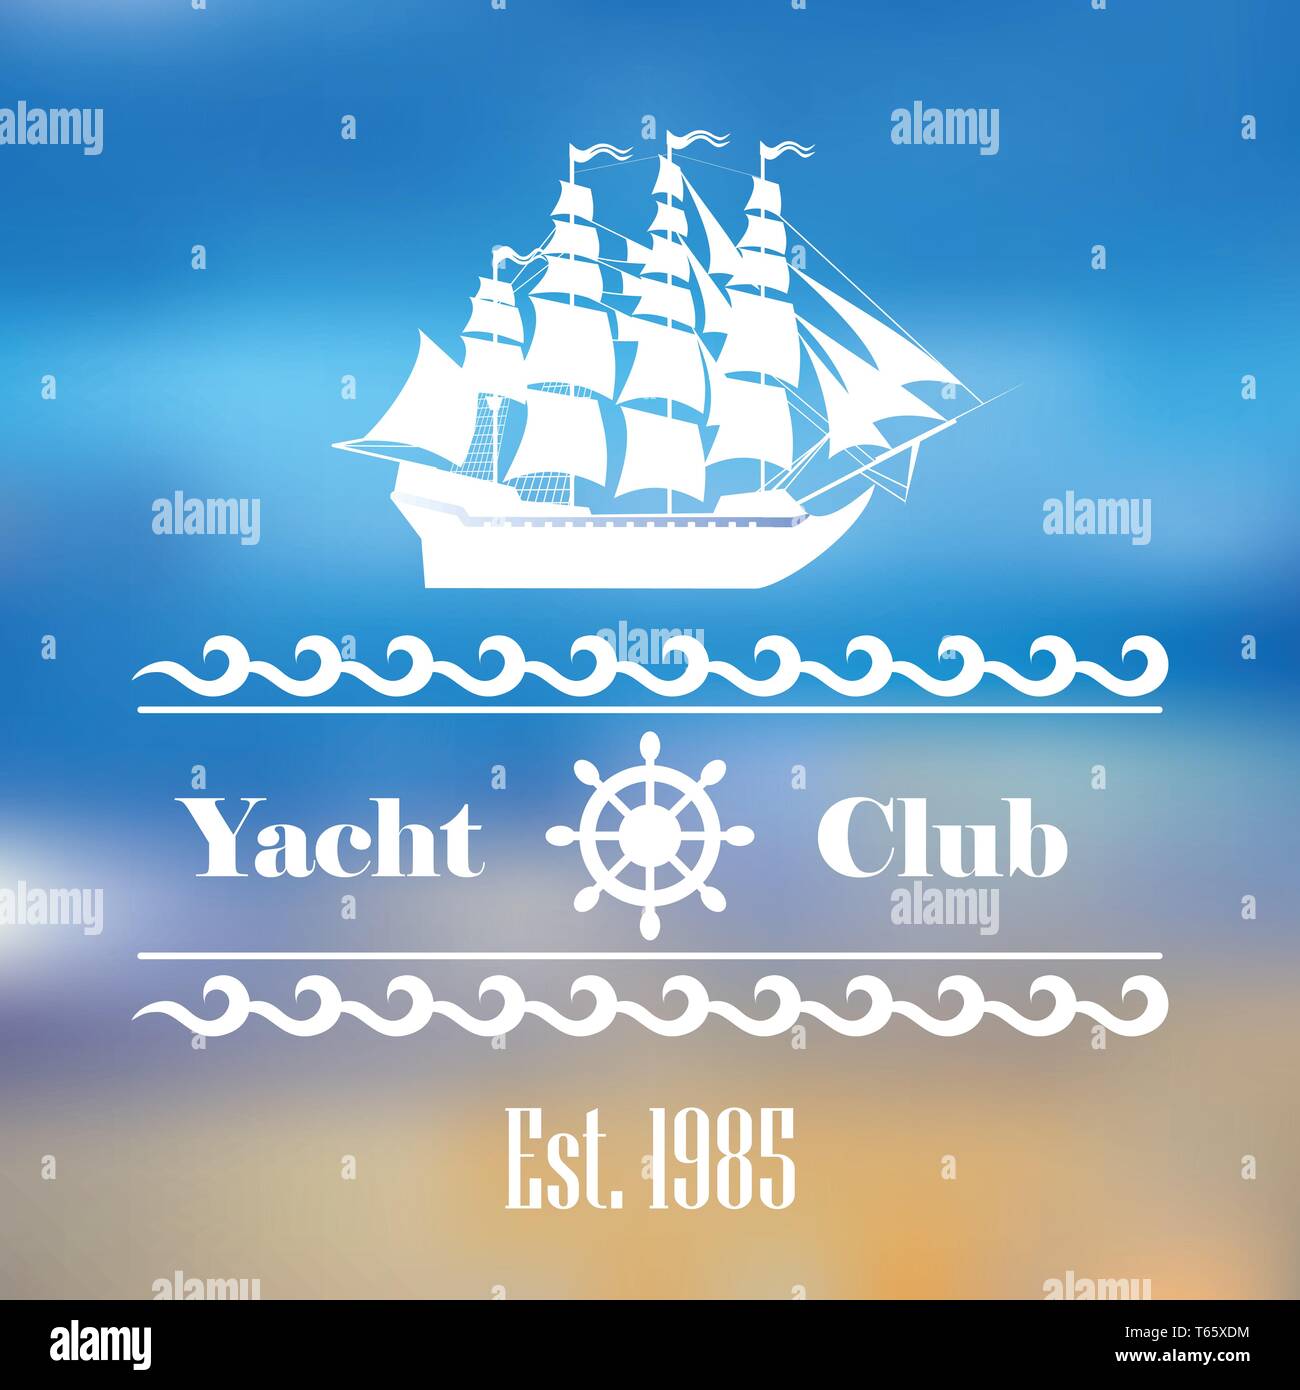 Segelboot logo für Yacht Club oder Marina Stock Vektor